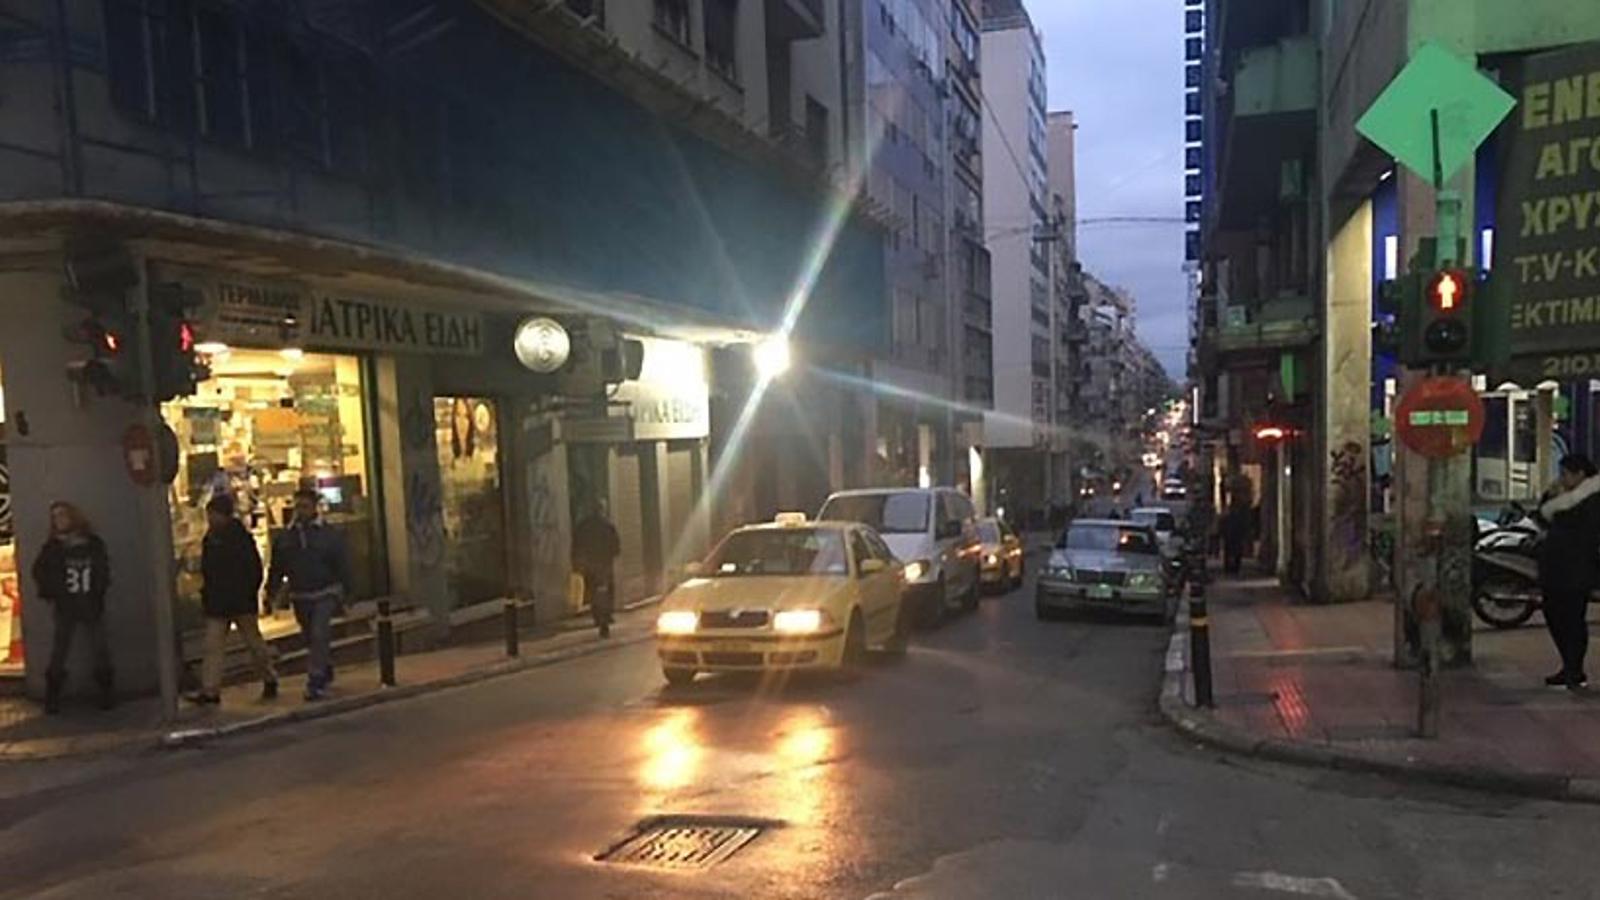 Det tuffa kvarteret Omonia i Aten, där bilar kommer åkandes på en bilväg. Till vänster och höger om bilvägen går det människor på gatorna.